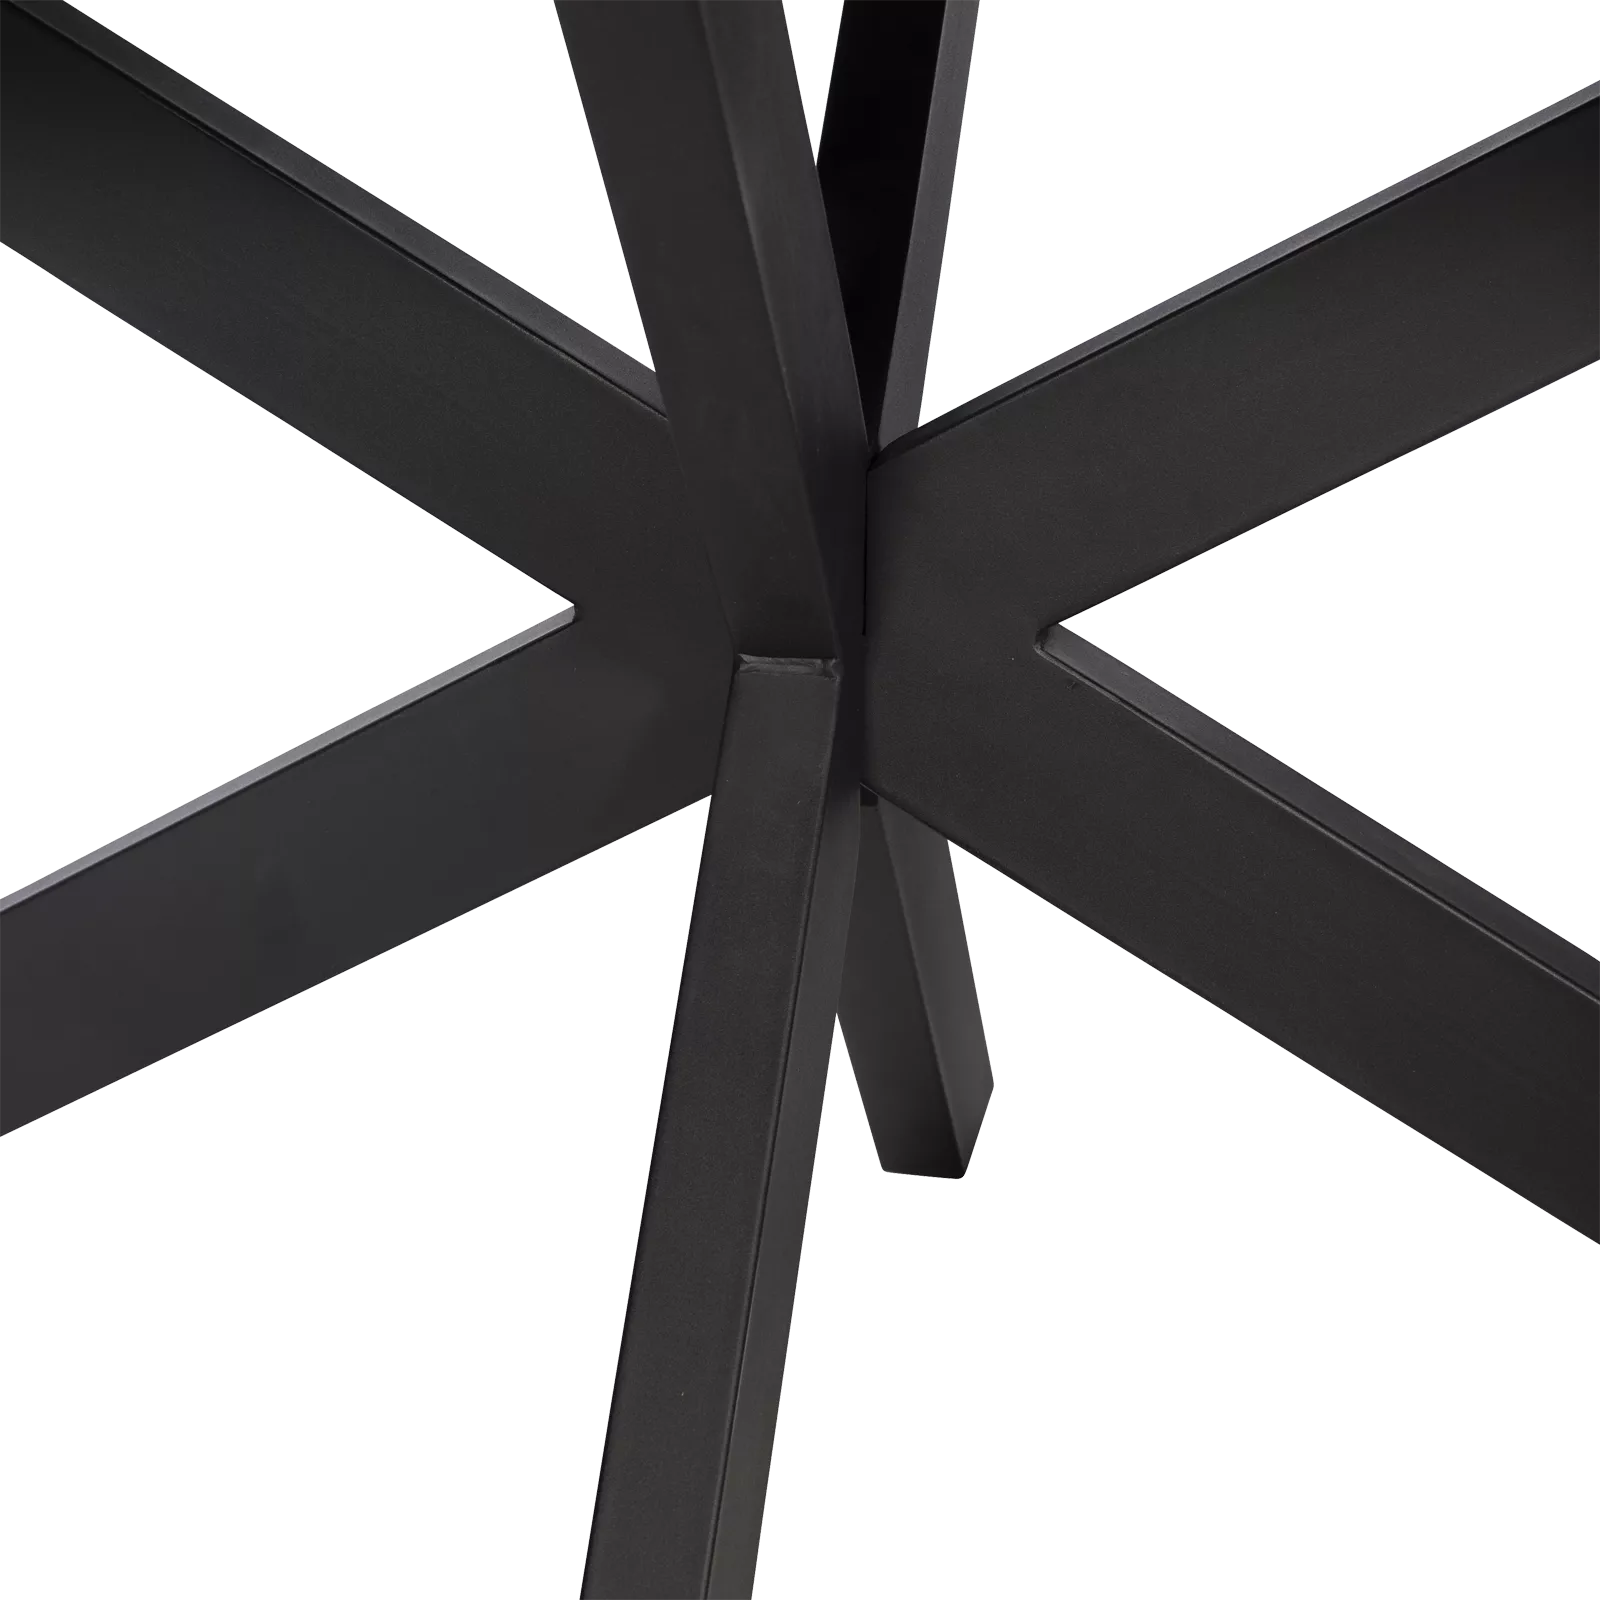 Eettafel (ovaal - 200x100cm) Keystone - Black Sky